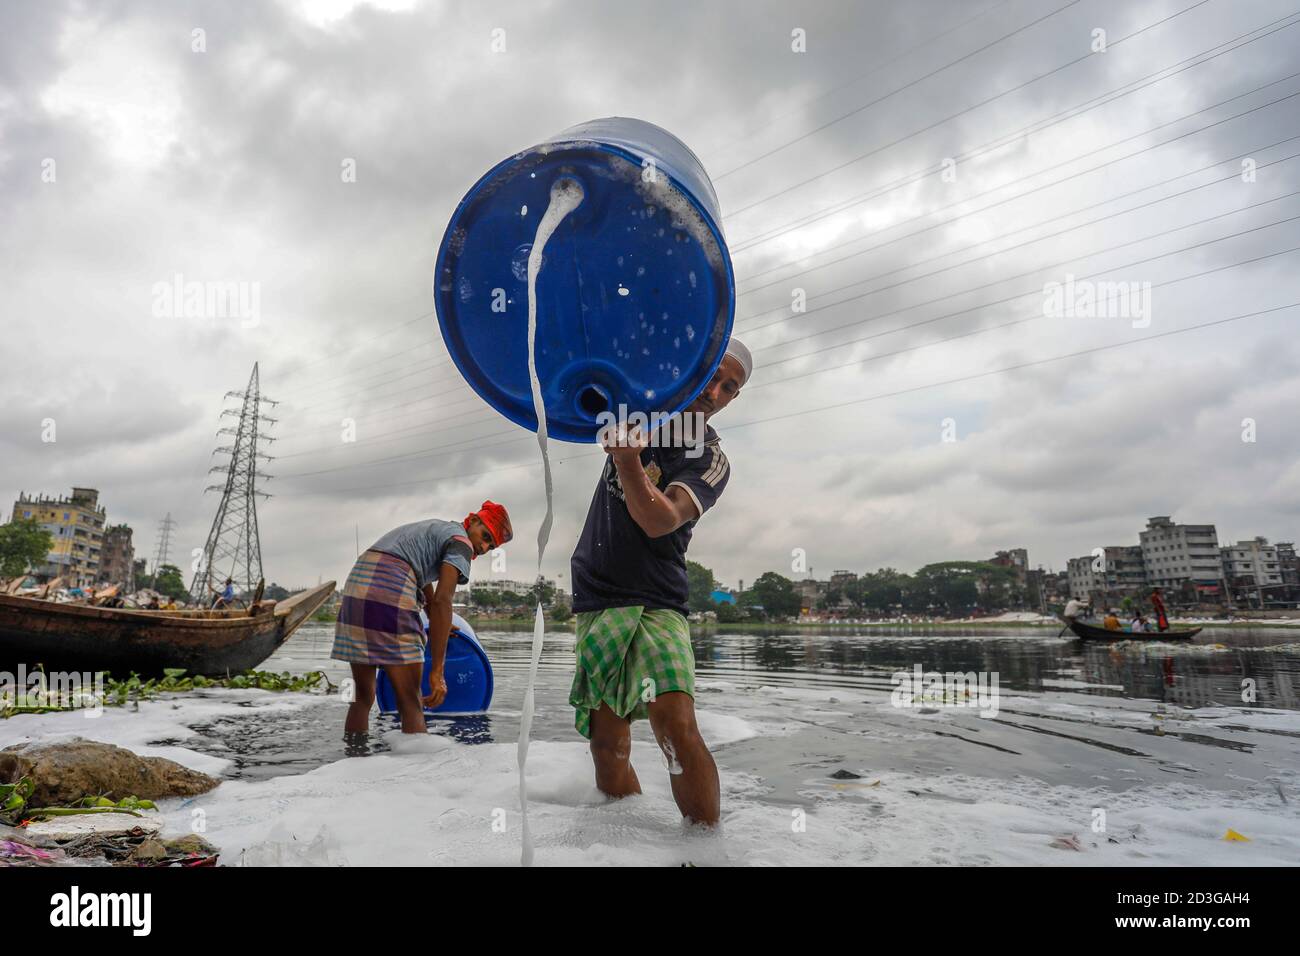 Les hommes bangladais lavent des fûts en plastique vides, utilisés pour transporter des produits chimiques, dans l'eau du fleuve Buriganga avant de les recycler, à Dhaka, Bangl Banque D'Images